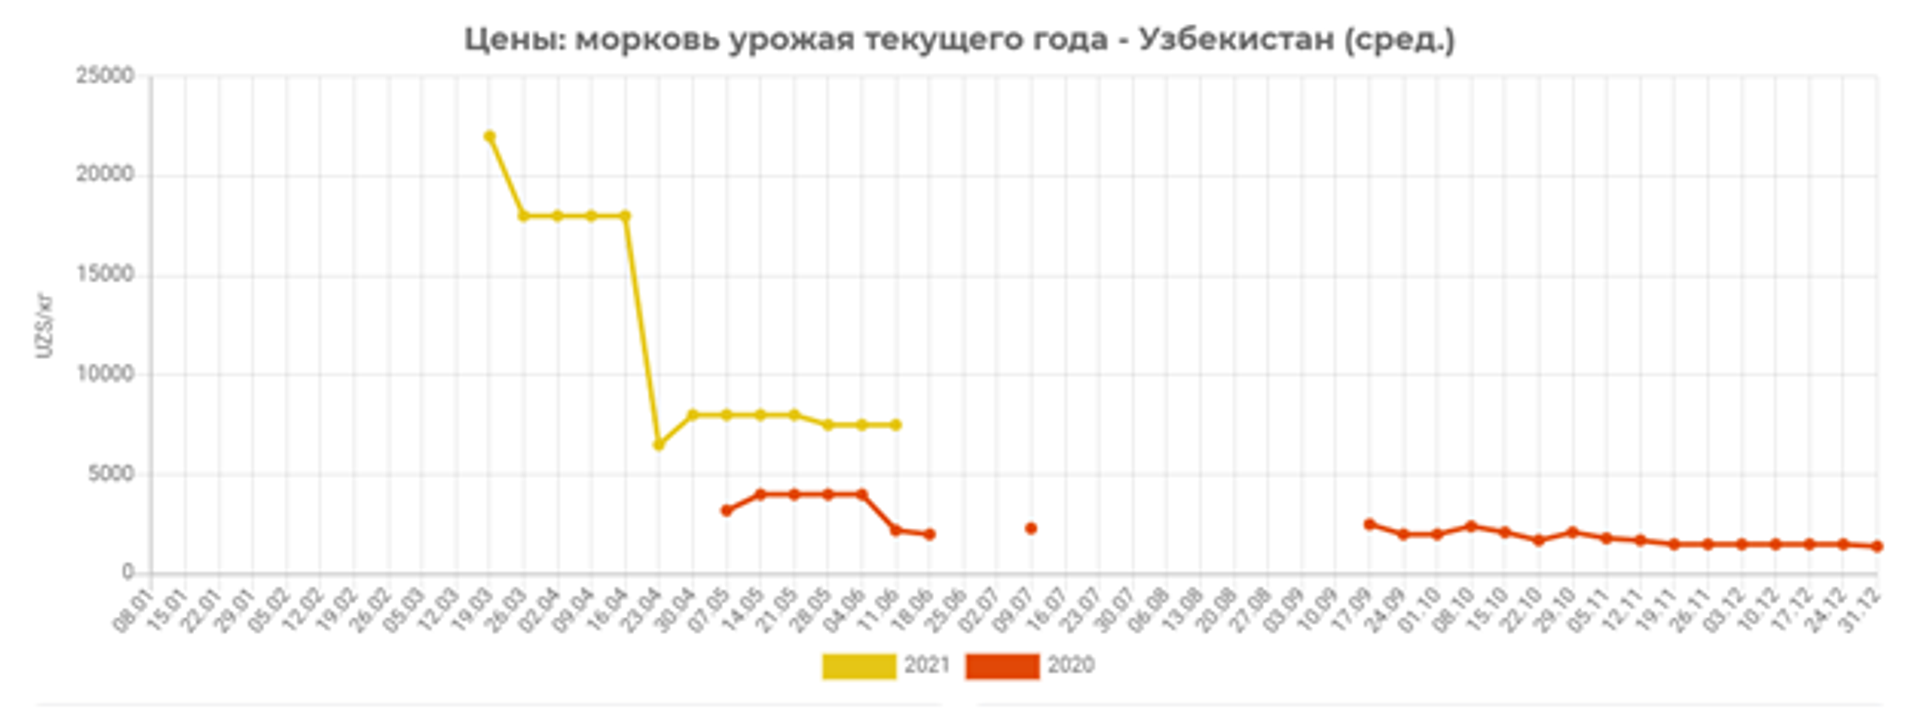 В первой декаде июня 2020 года цены на раннюю морковь упали почти в 2 раза и были ниже почти 3,5 раза, чем текущие цены - Sputnik Узбекистан, 1920, 20.06.2021